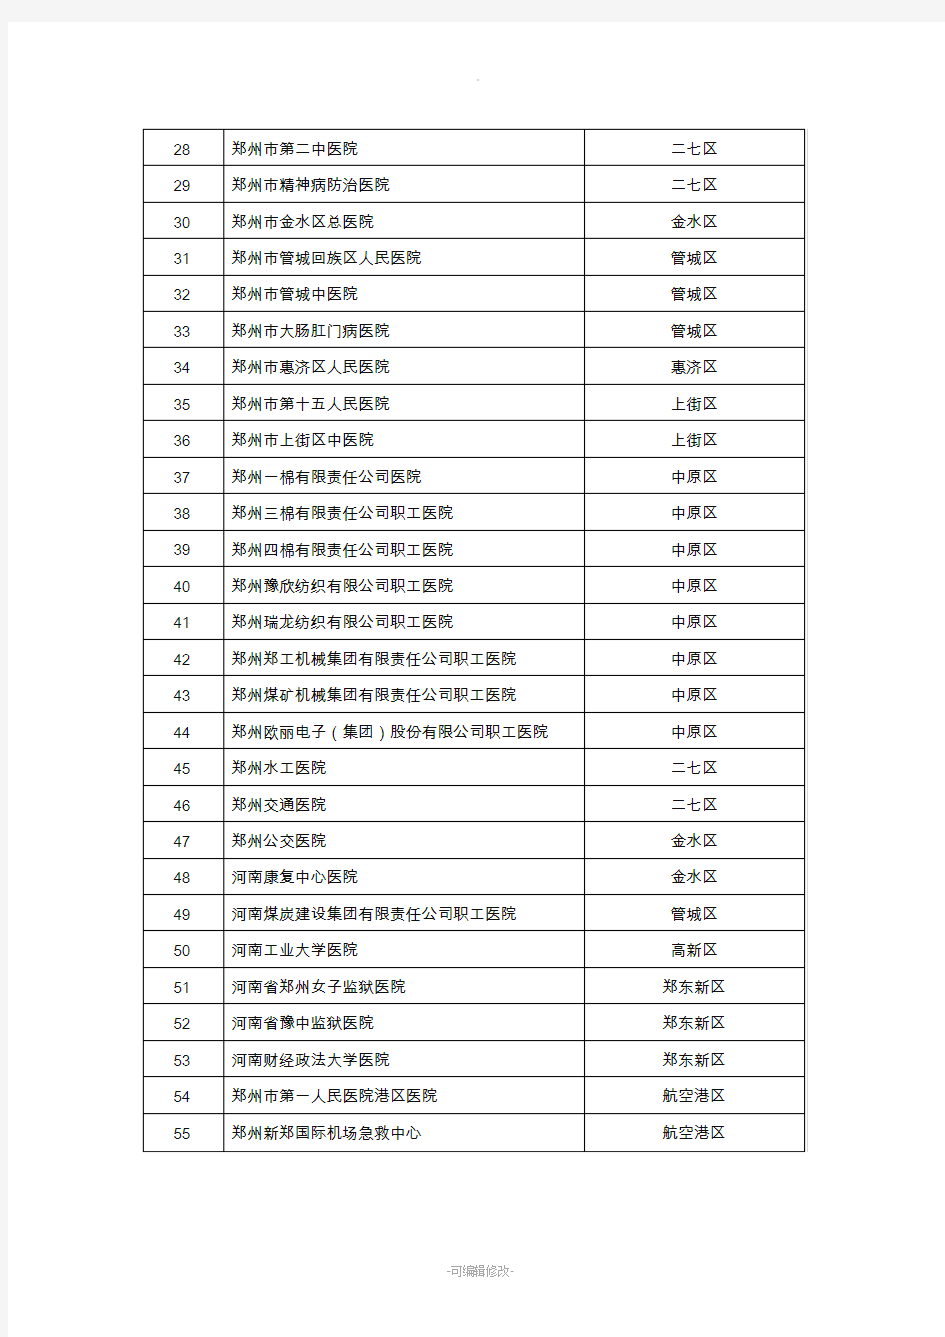 郑州市城市公立医院名单